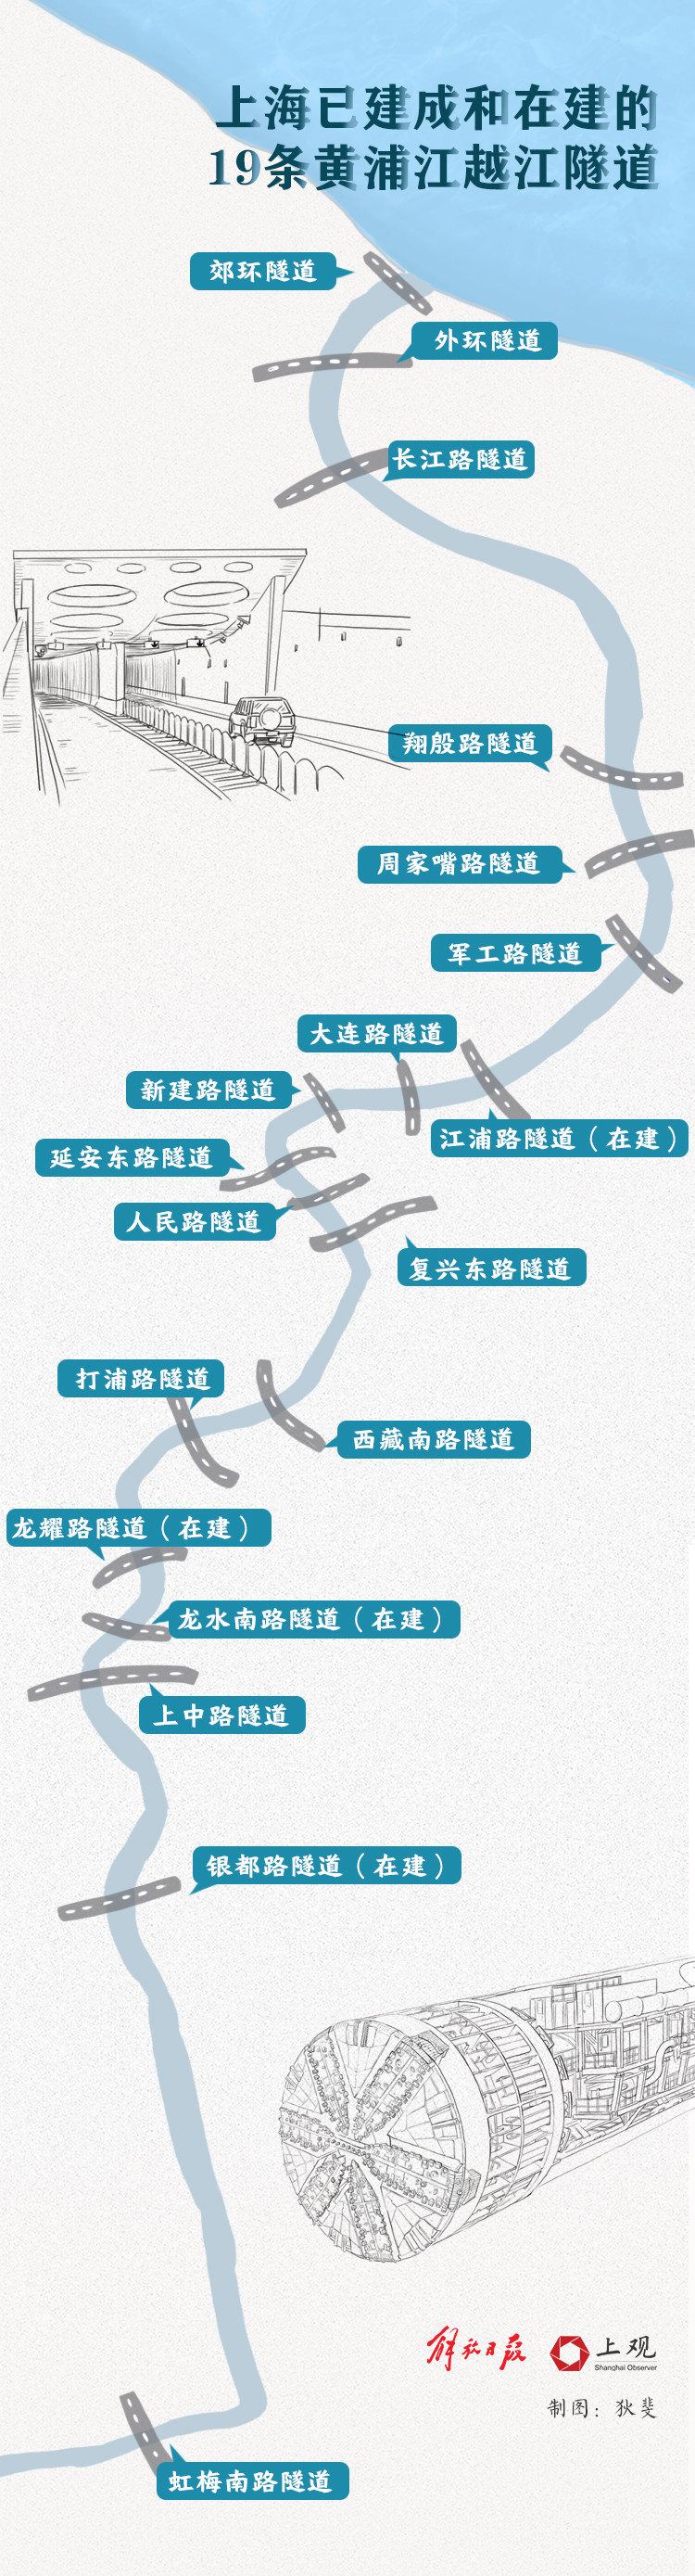 两座黄浦江新桥将于年内开工,还有这些轨交线路正在规划中|隧道